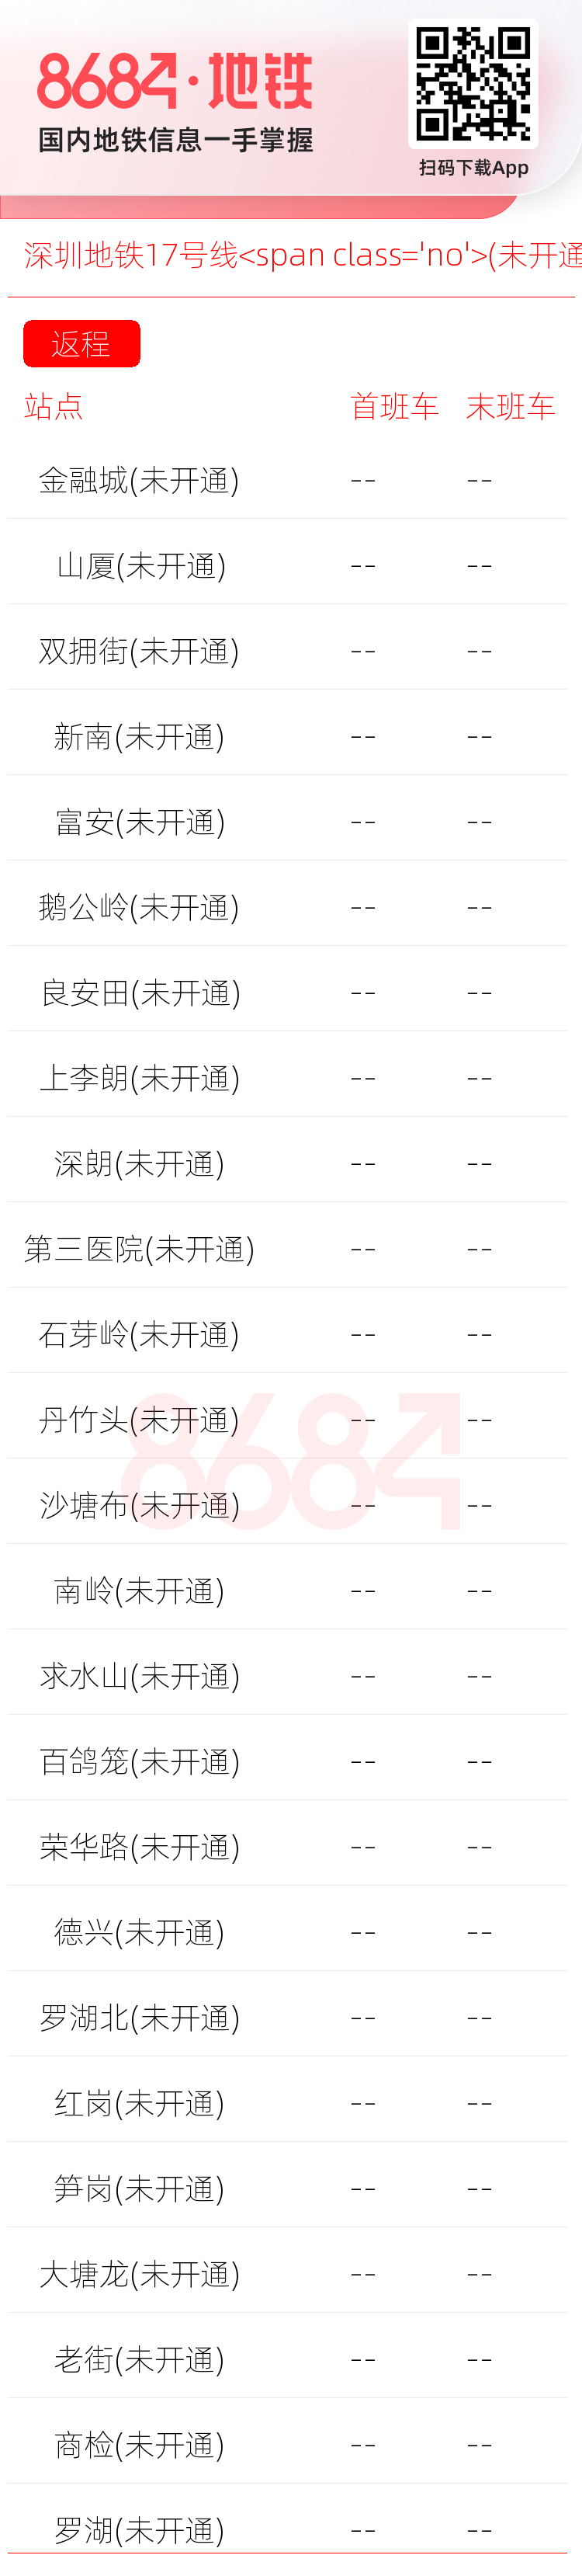 深圳地铁17号线<span class='no'>(未开通)</span>运营时间表